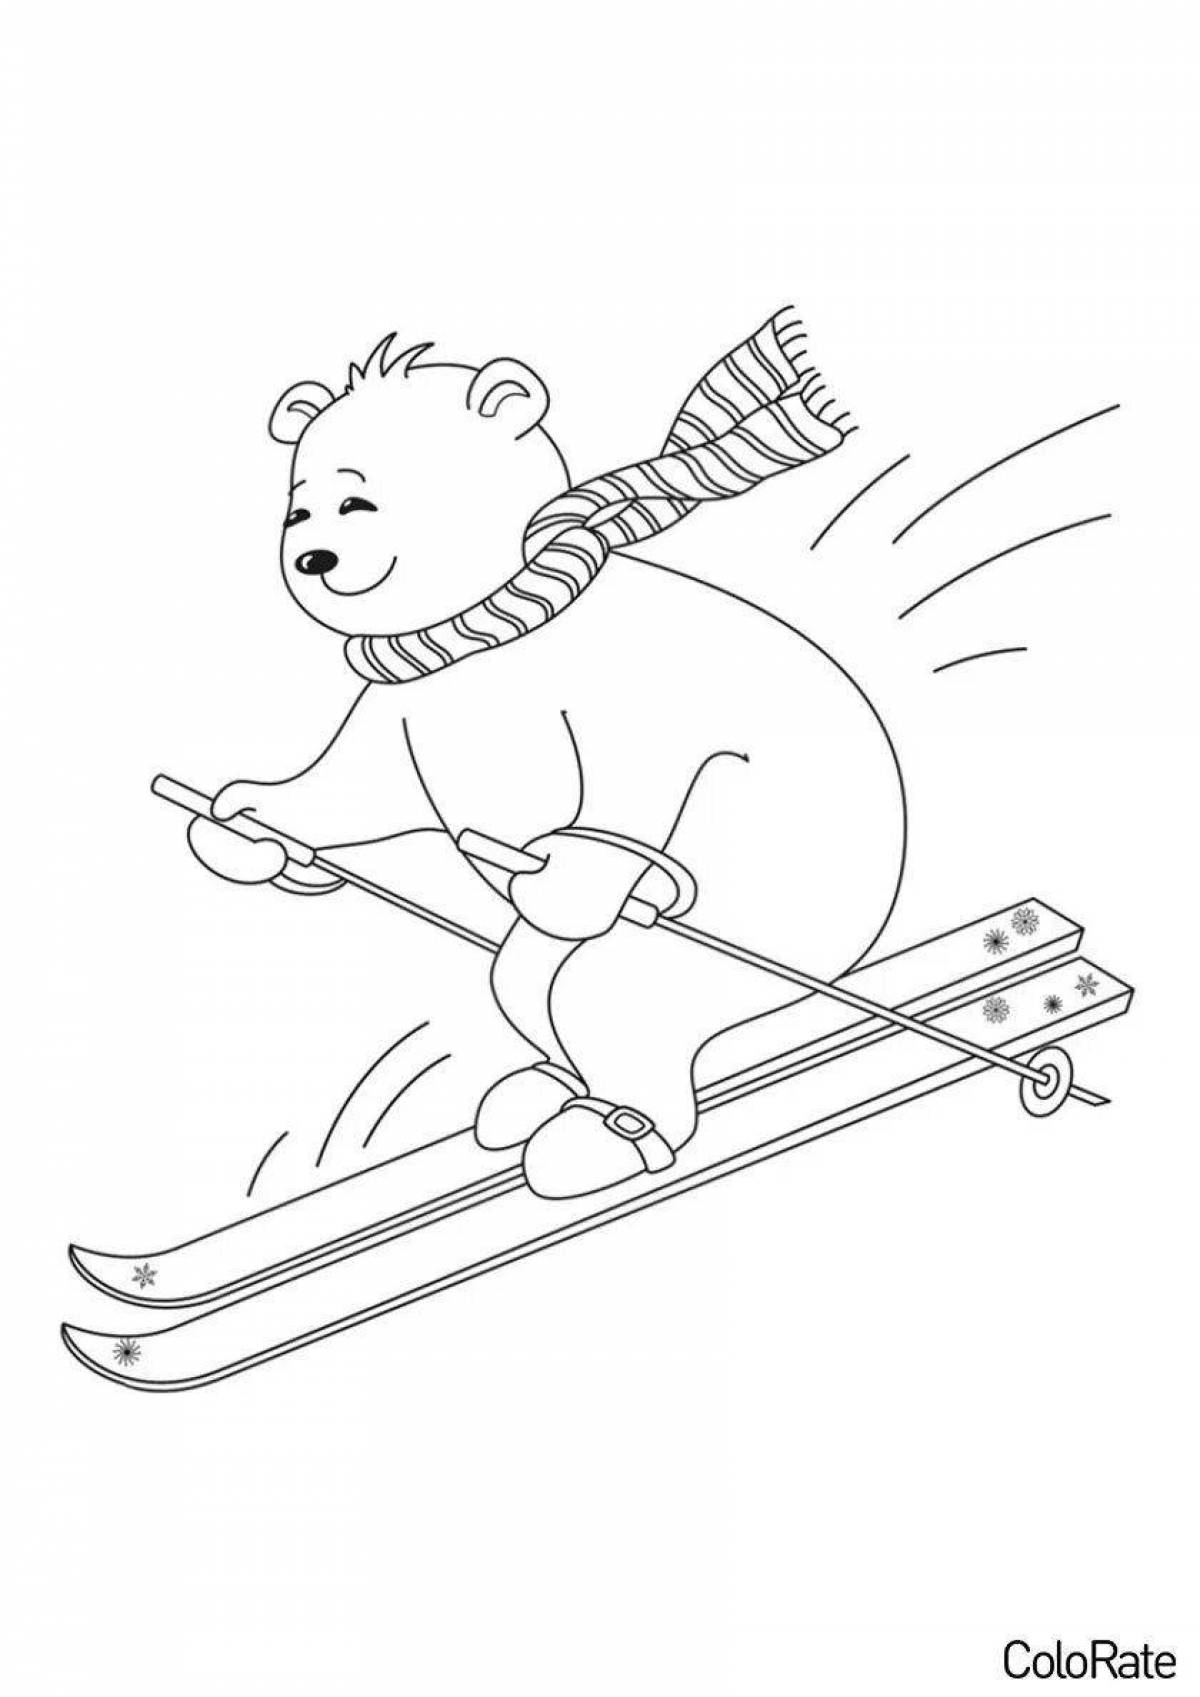 Красочные лыжи для детей 3-4 лет